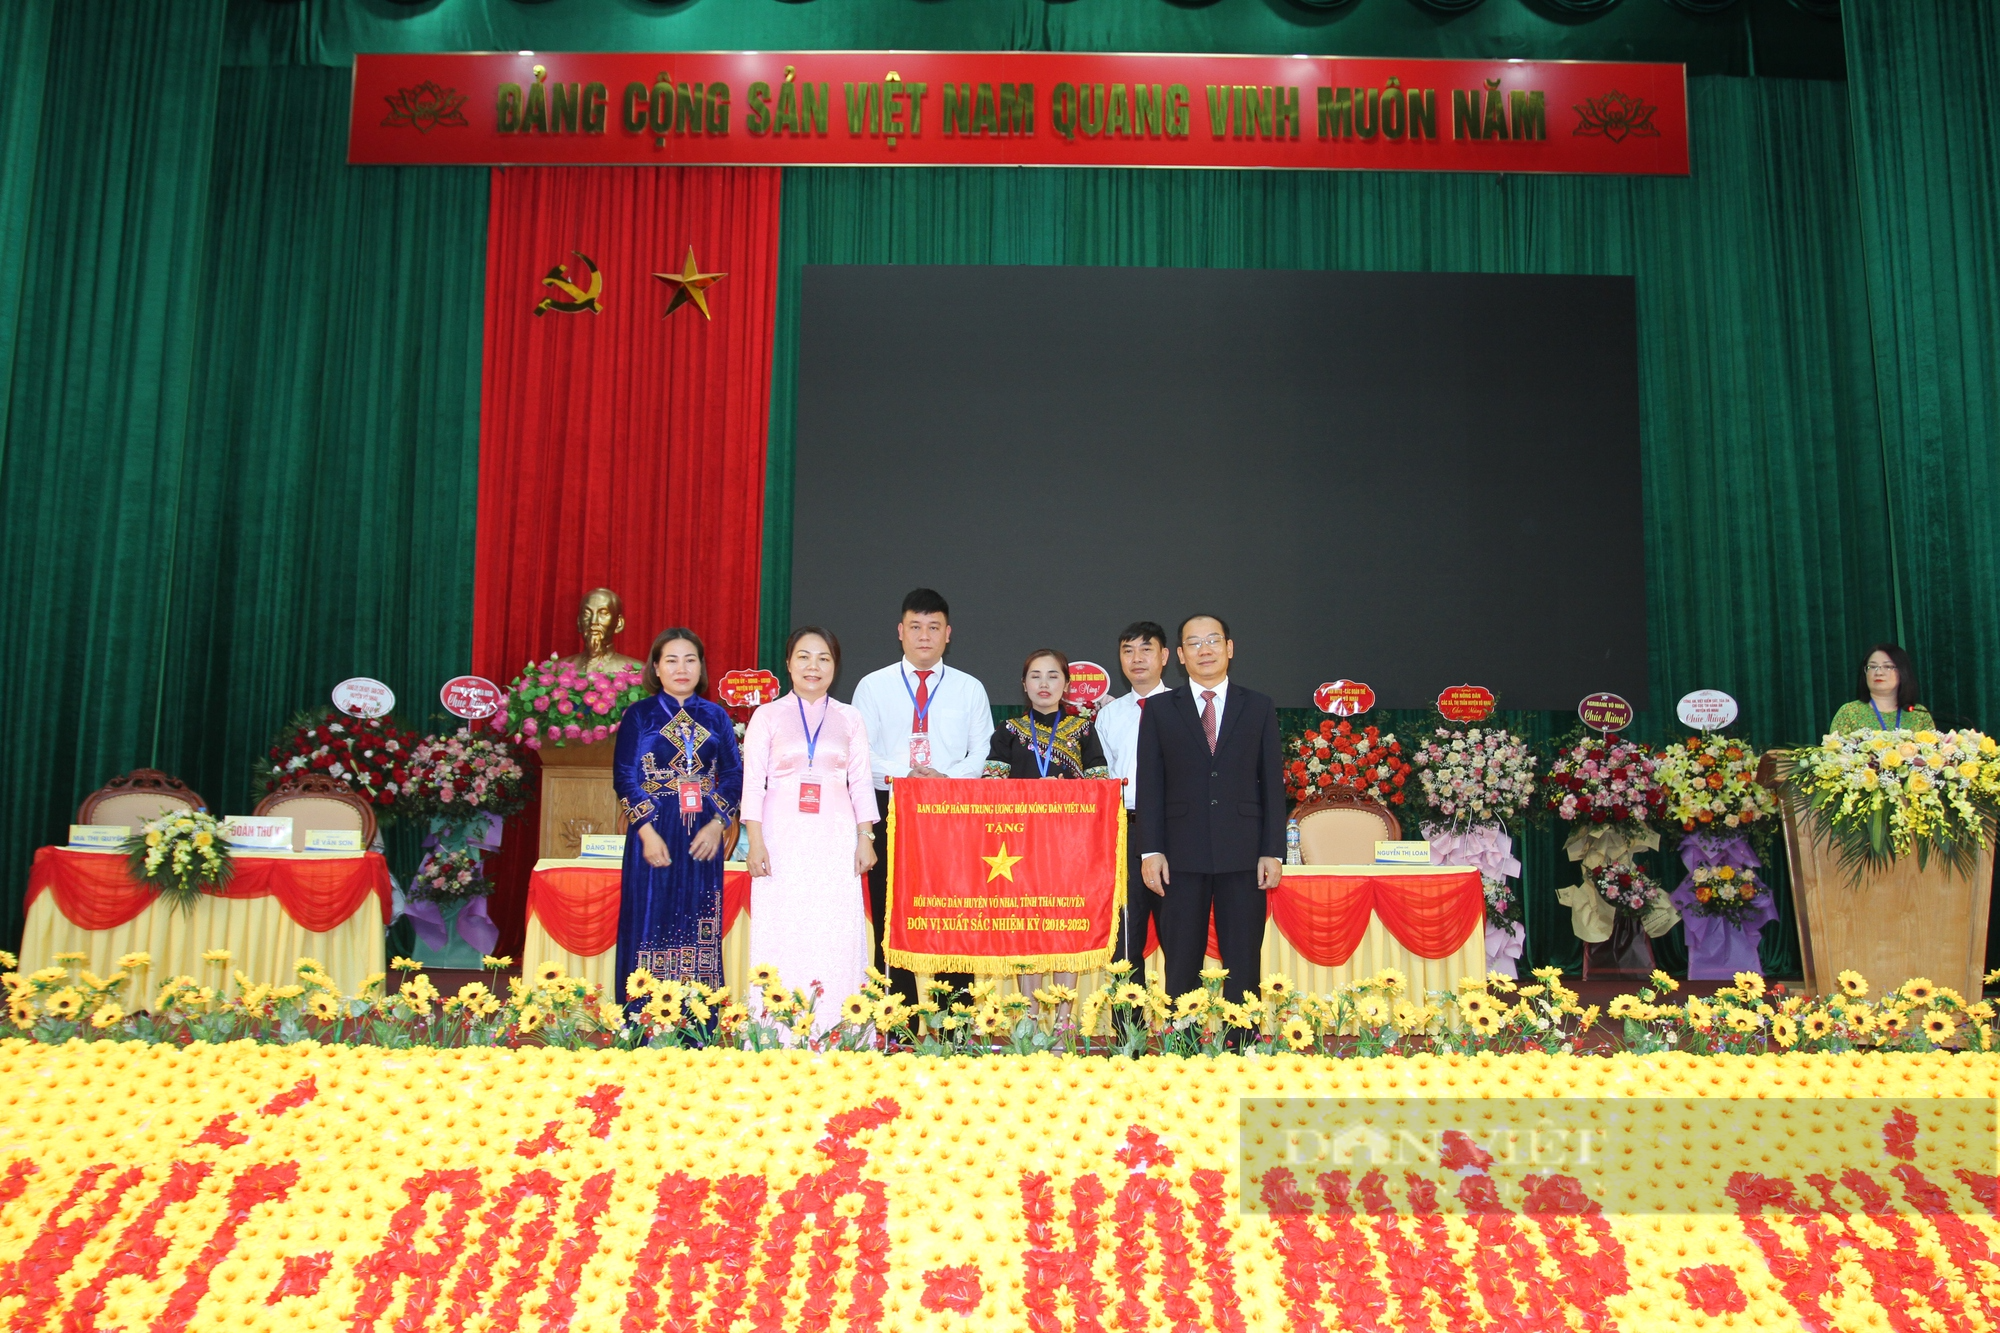 Khai mạc Đại hội đại biểu HND huyện Võ Nhai lần thứ X, bà Triệu Thị Nhinh tái đắc cử chức danh Chủ tịch - Ảnh 6.